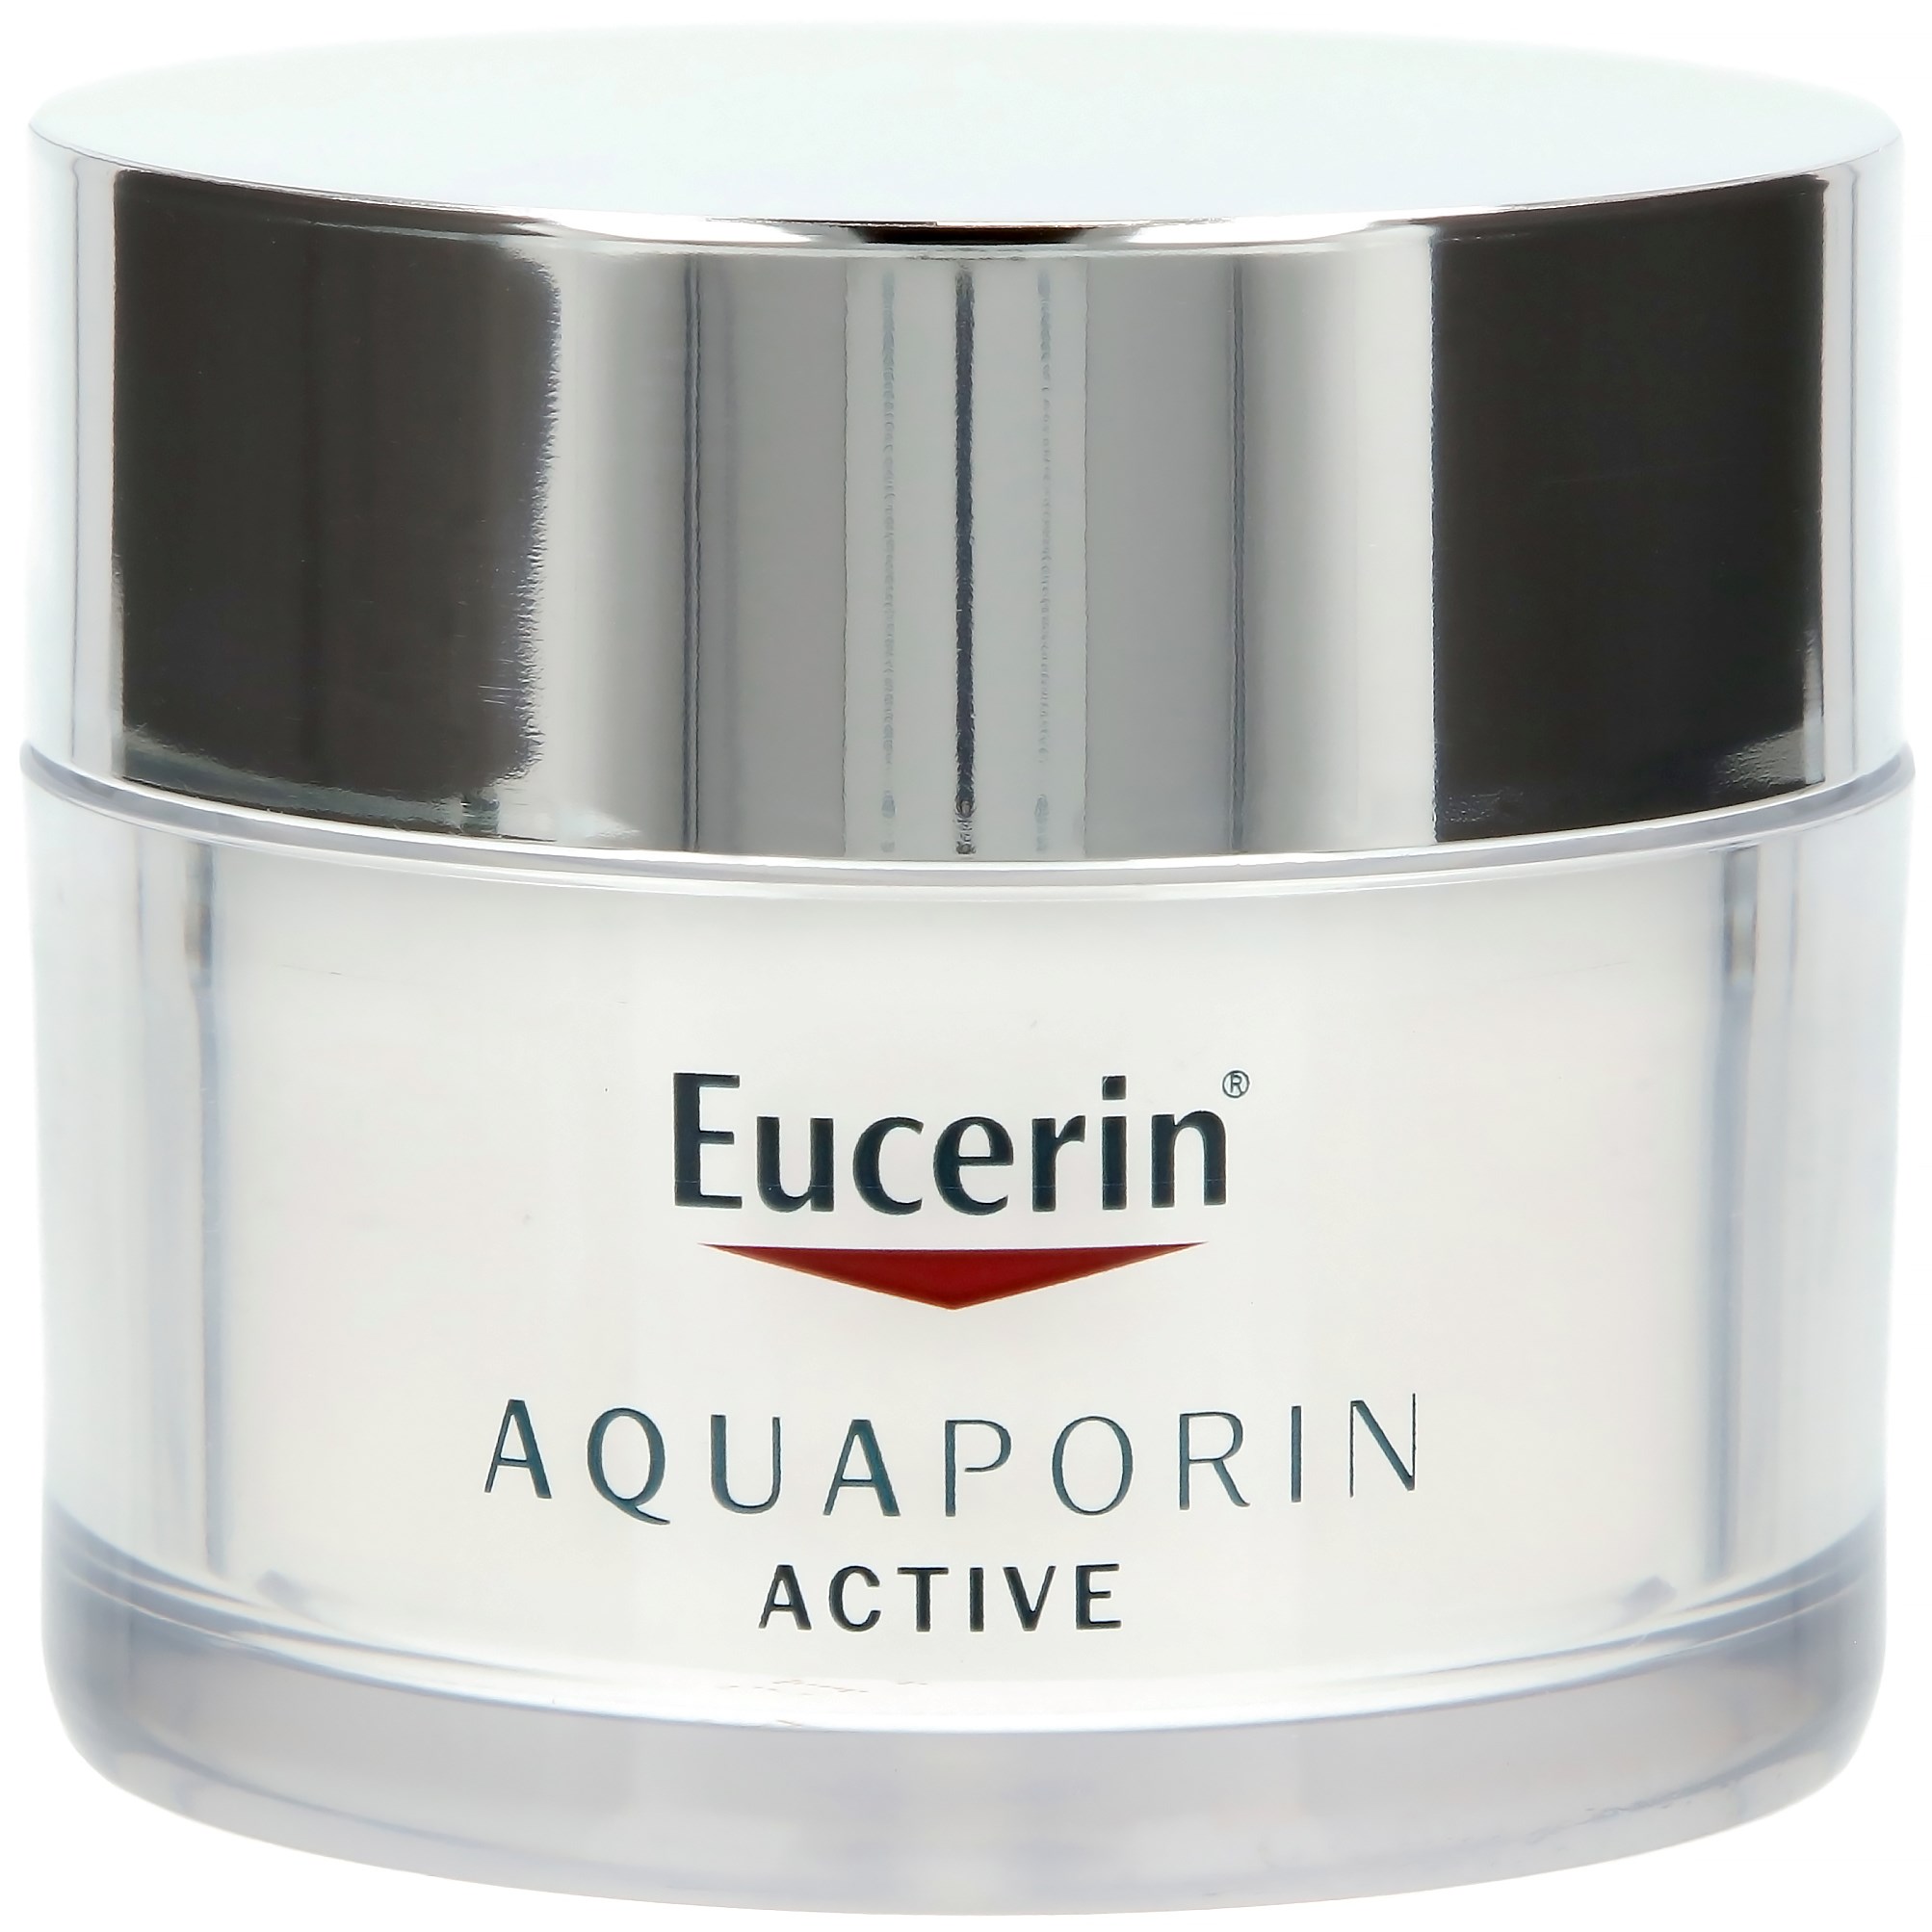 Eucerin AQUAporin ACTIVE med SPF 25 All Skin Types 50 ml